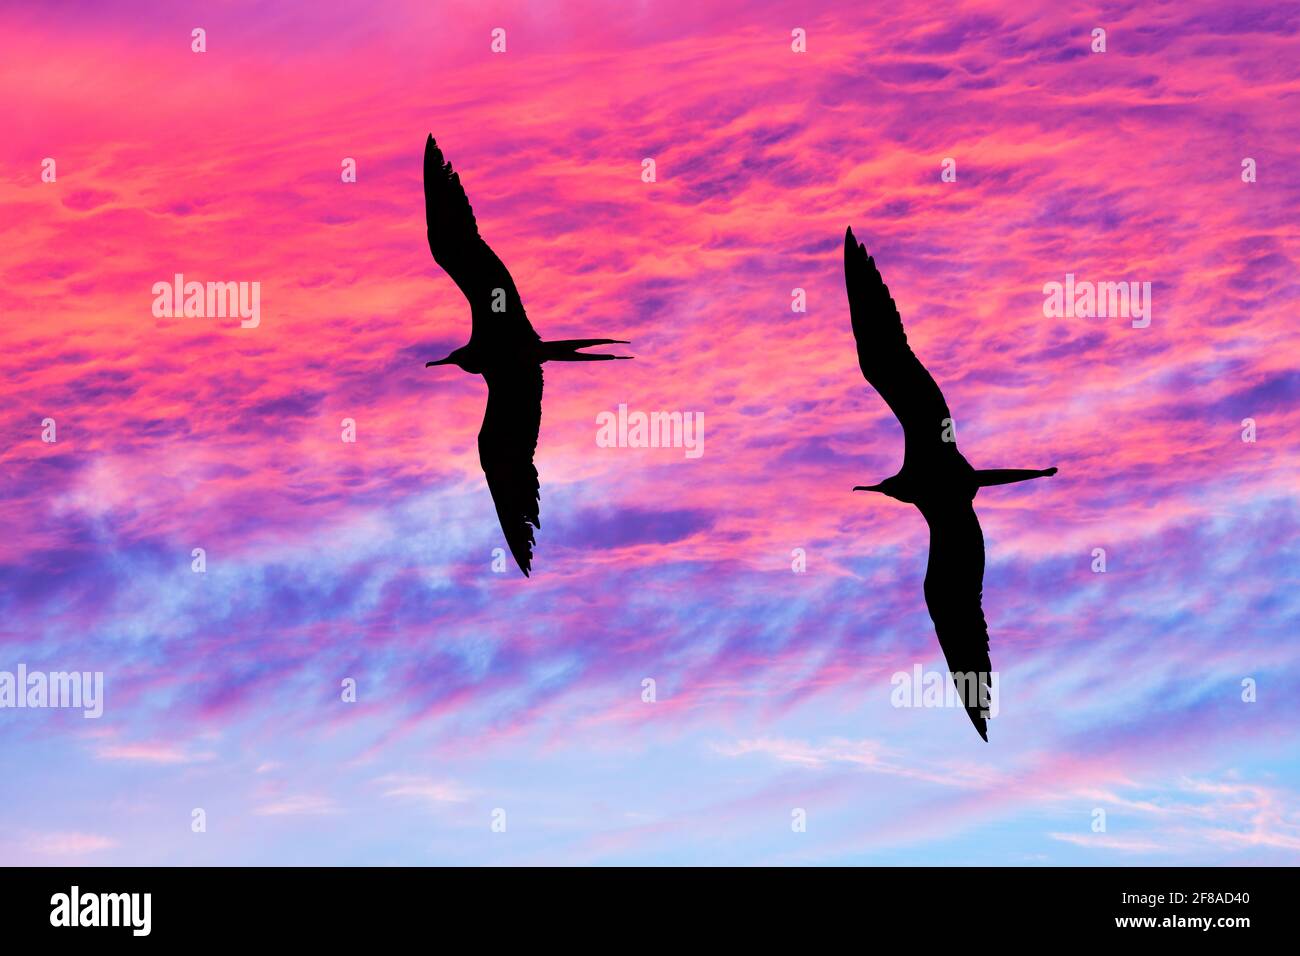 Zwei Vögel Fliegen Zusammen Mit Flügeln, Gegen Die Sich Silhouetten Ausbreiten Ein lebendiger, farbenfroher Sonnenuntergang am Himmel Stockfoto